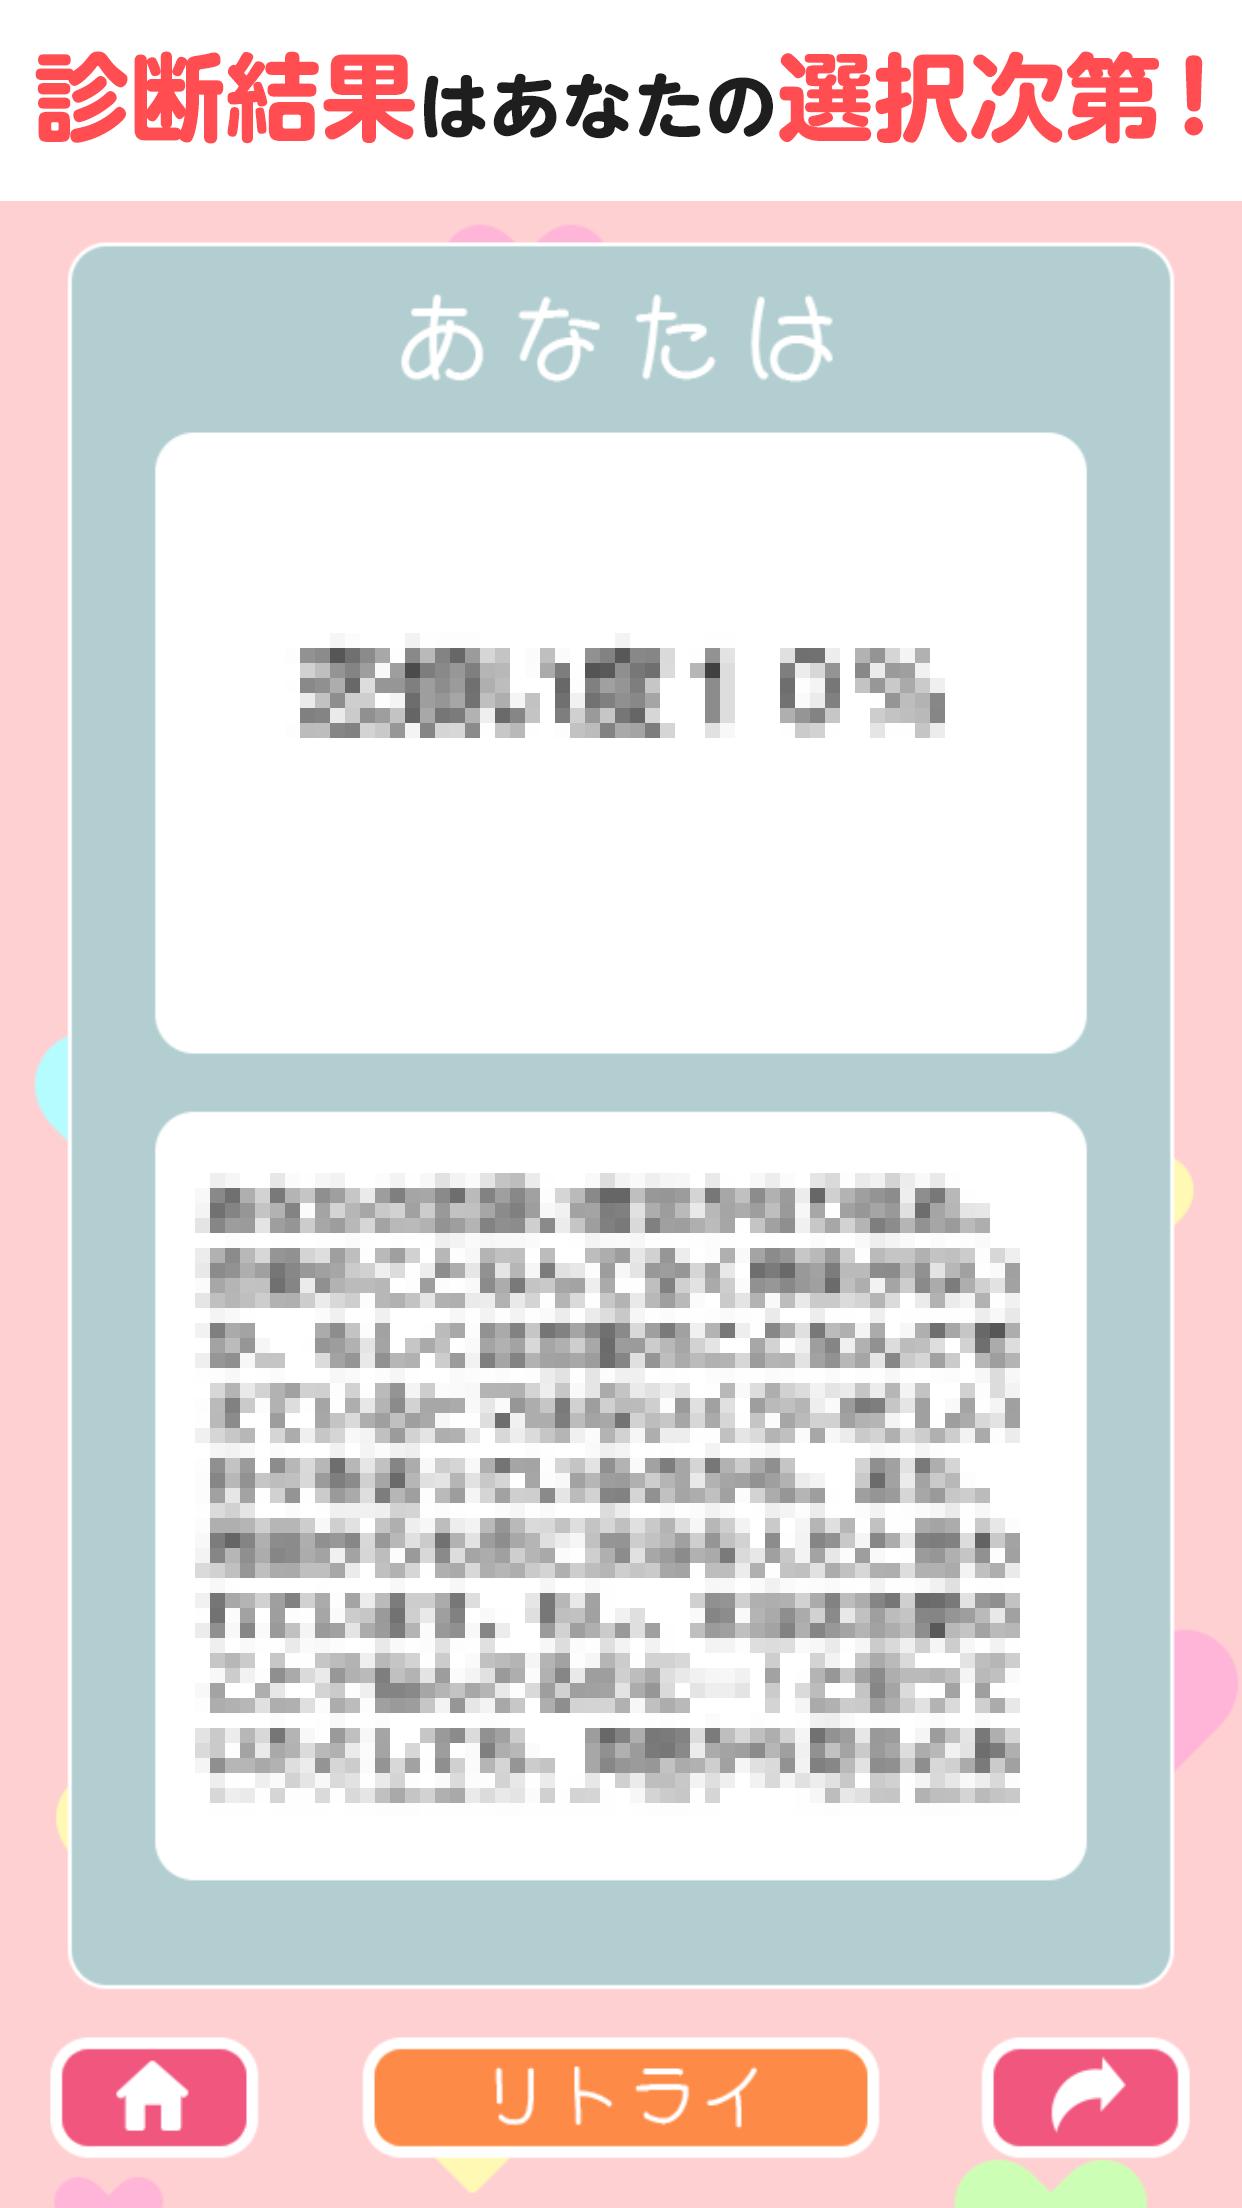 恋煩い度診断 For Android Apk Download